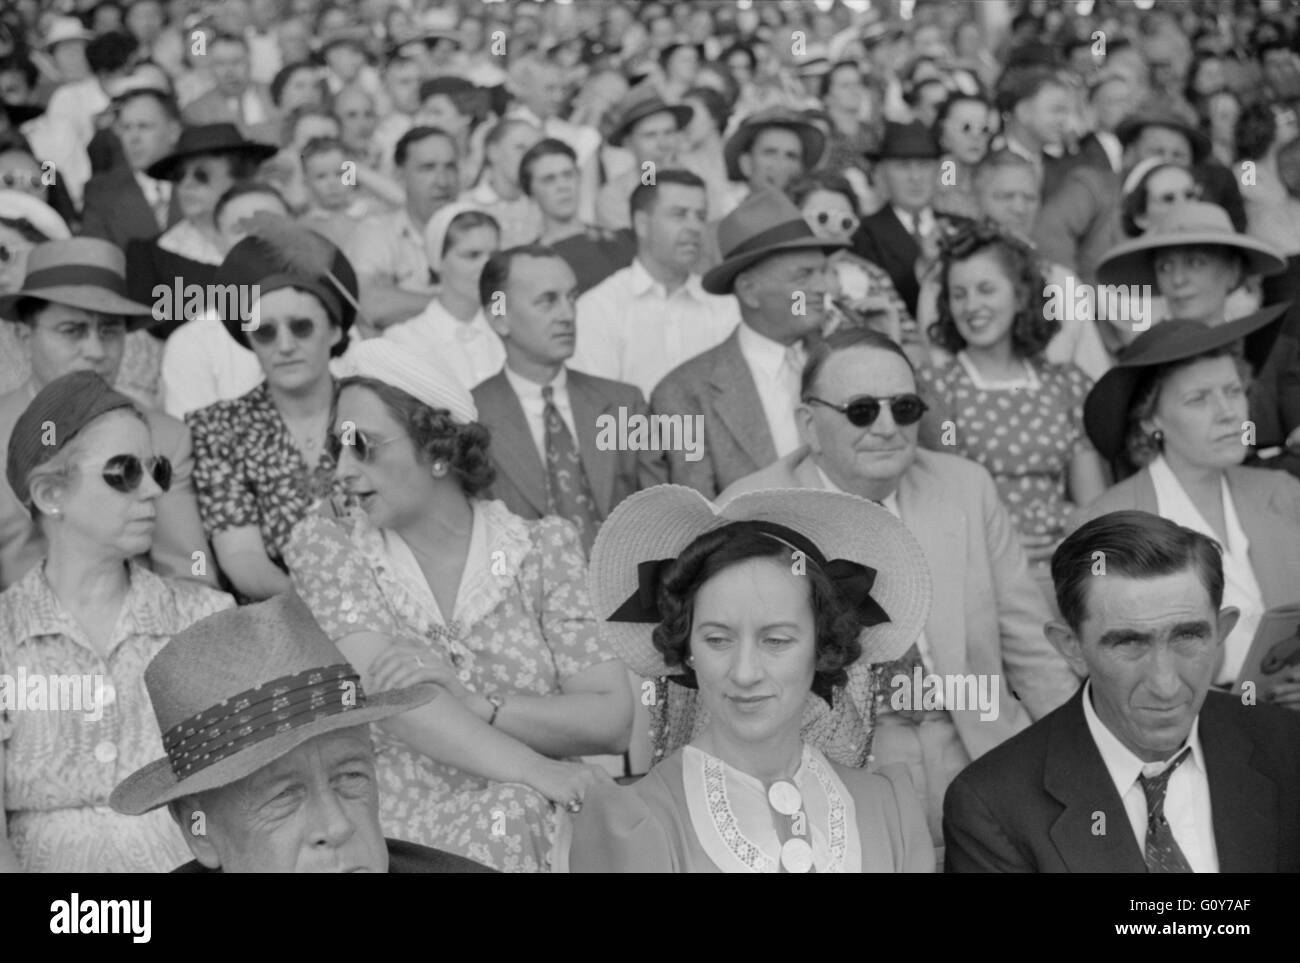 Zuschauer im Sulky-Rennen auf Messe, Rutland, Vermont, USA, von Jack Delano für Farm Security Administration, September 1941 Stockfoto